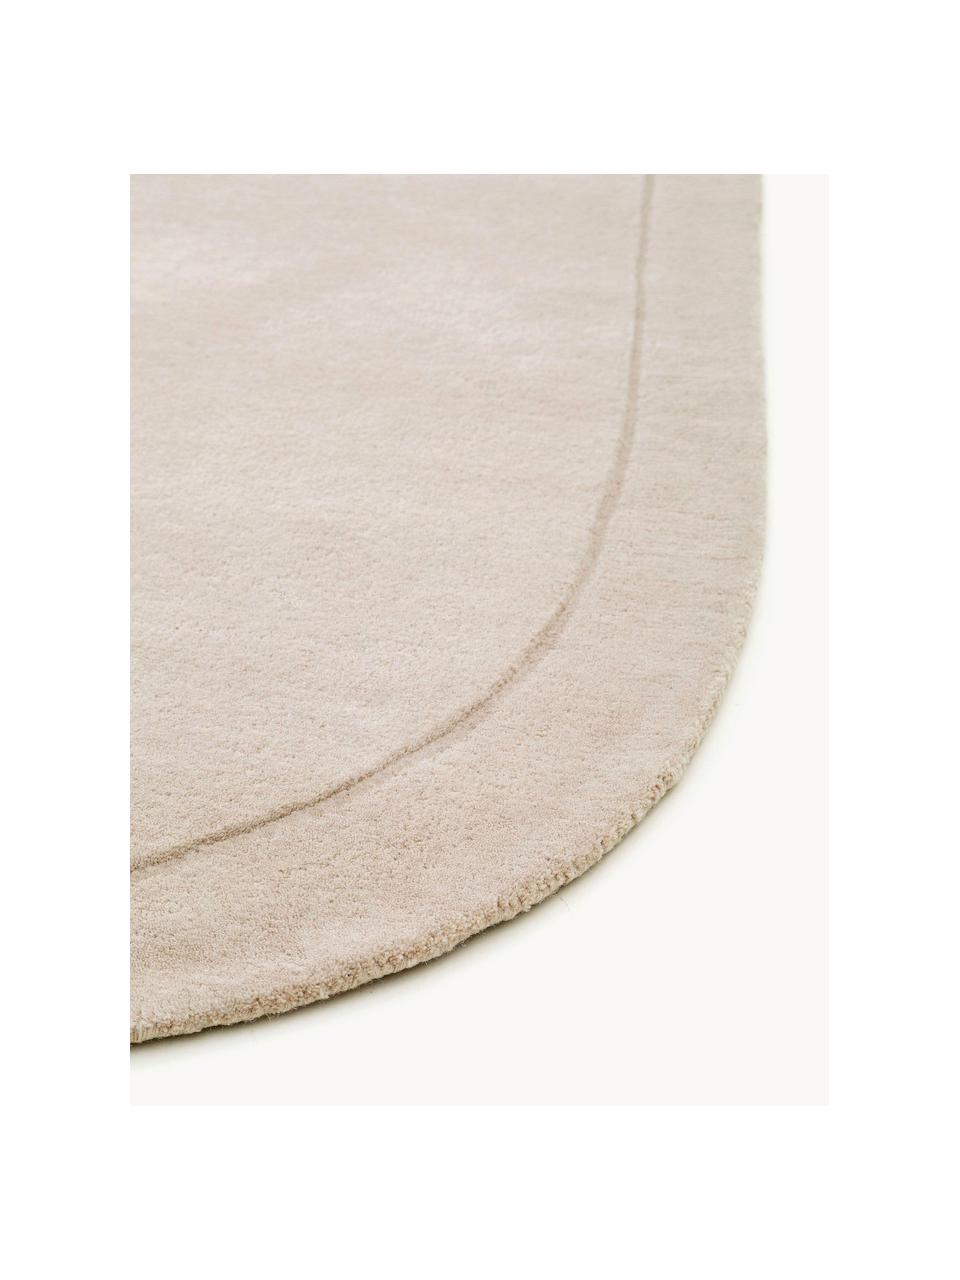 Tapis en laine tissé à la main de forme organique Shape, 100 % laine

Les tapis en laine peuvent perdre des fibres lors des premières semaines et des peluches peuvent se former, ce phénomène est naturel et diminue à mesure de votre usage et du temps, Beige clair, larg. 80 x long. 250 cm